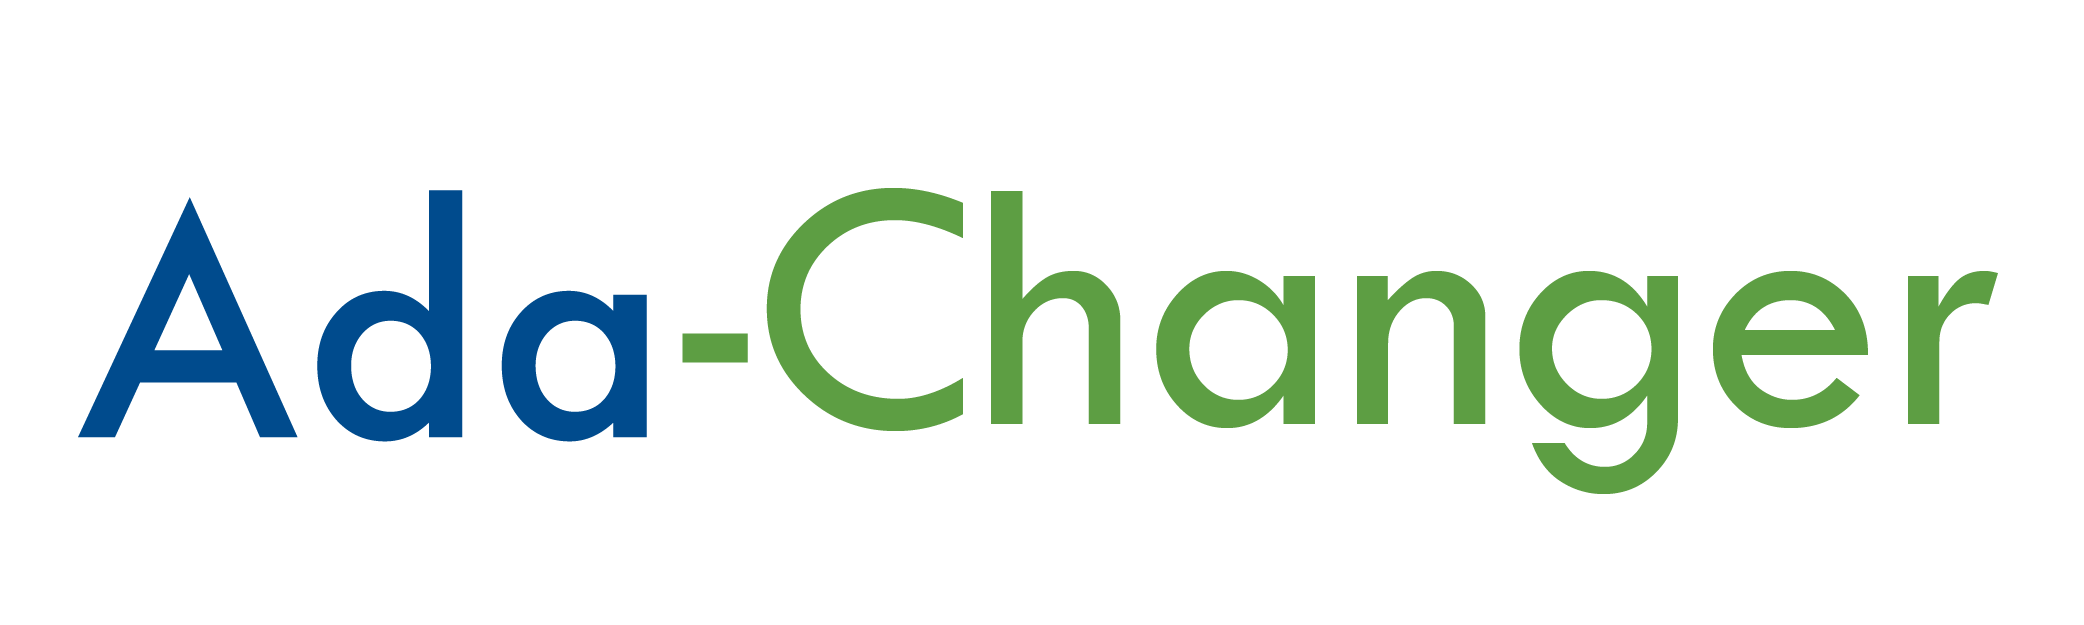 Ada_changer_logo